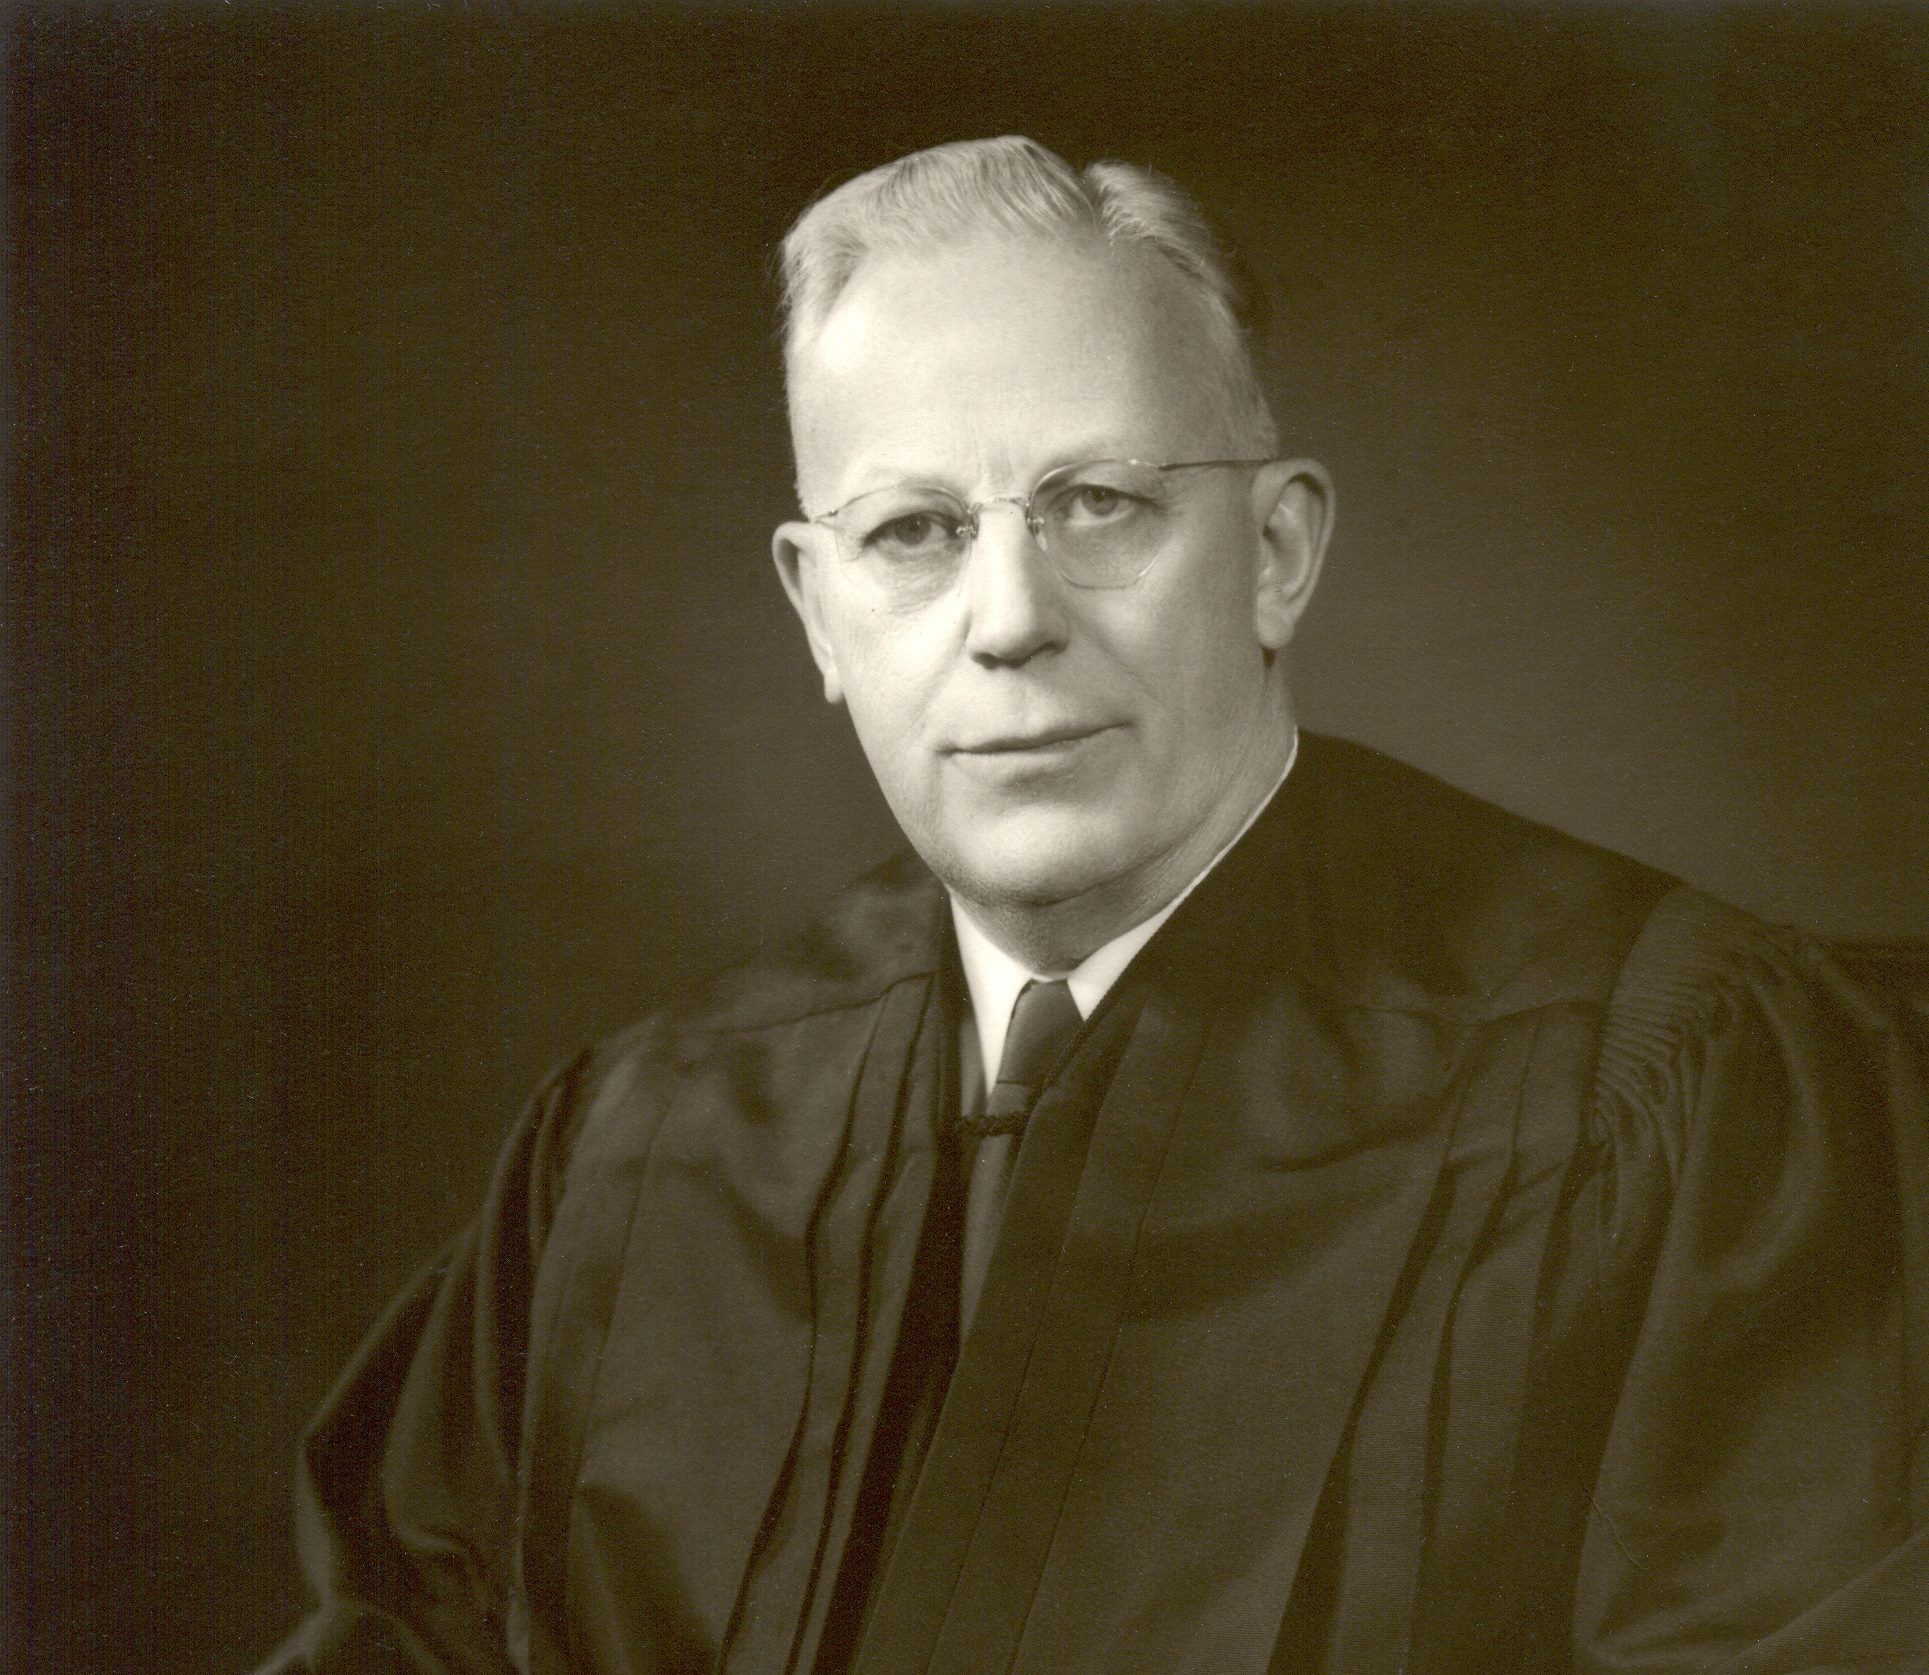 Headshot of Earl Warren in judicial robes.